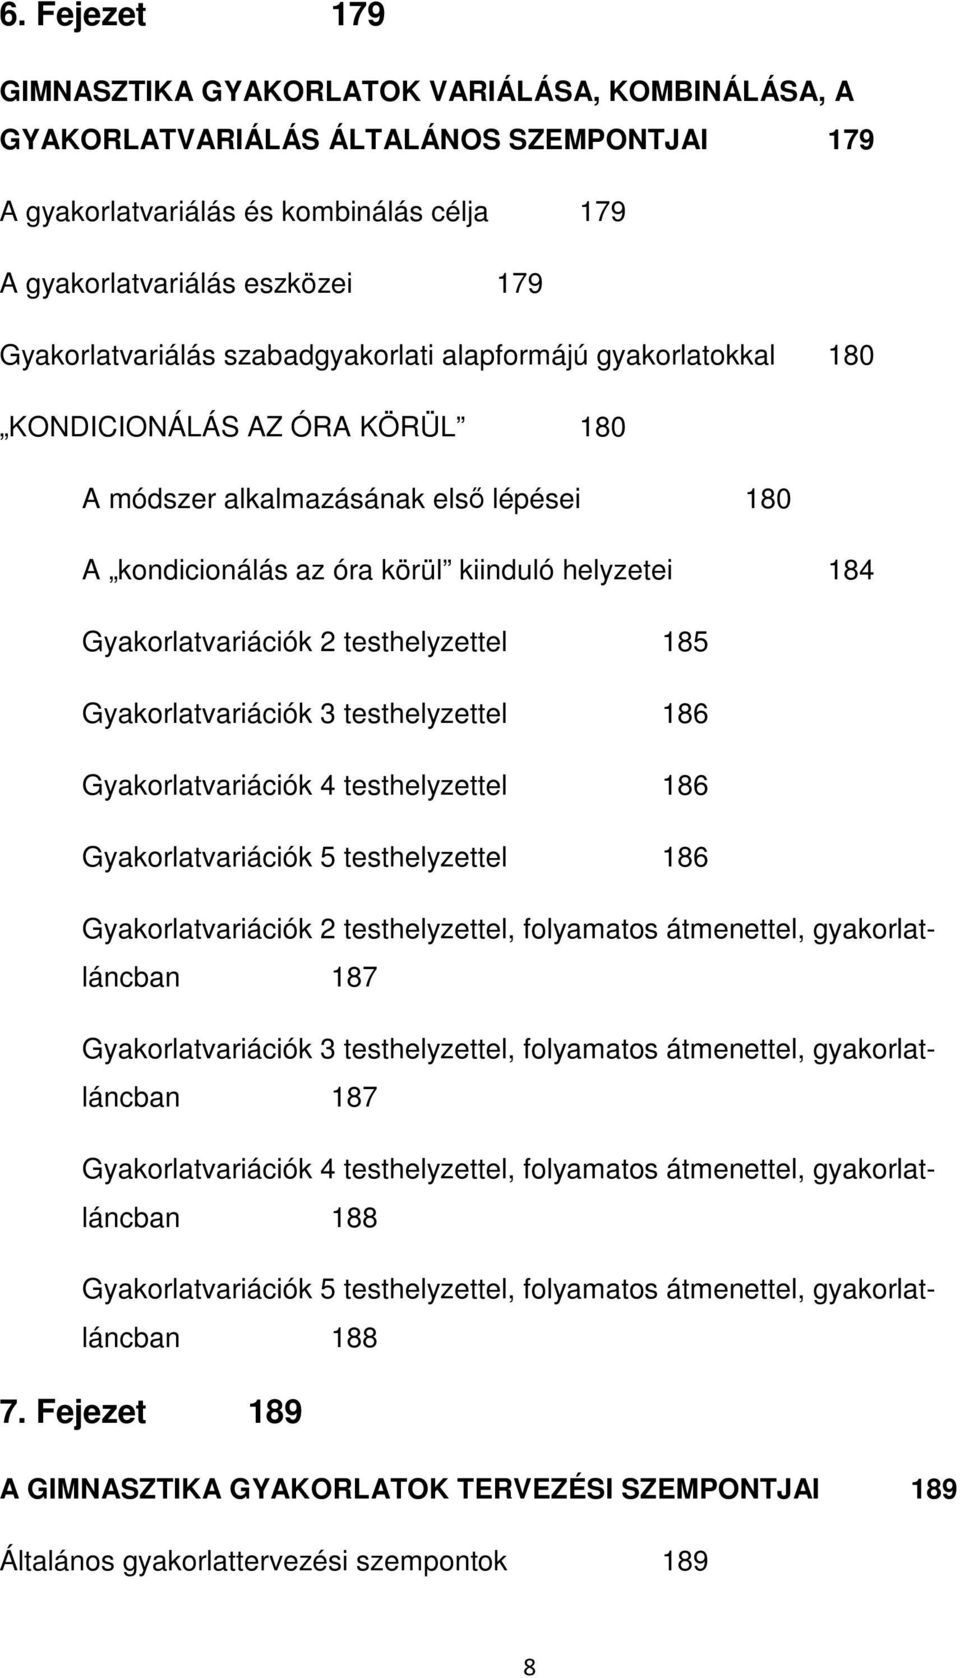 GIMNASZTIKA. Jegyzet az OKJ-s Sportszakember képzés számára. Semmelweis  Egyetem Testnevelési és Sporttudományi Kar (TF) - PDF Ingyenes letöltés